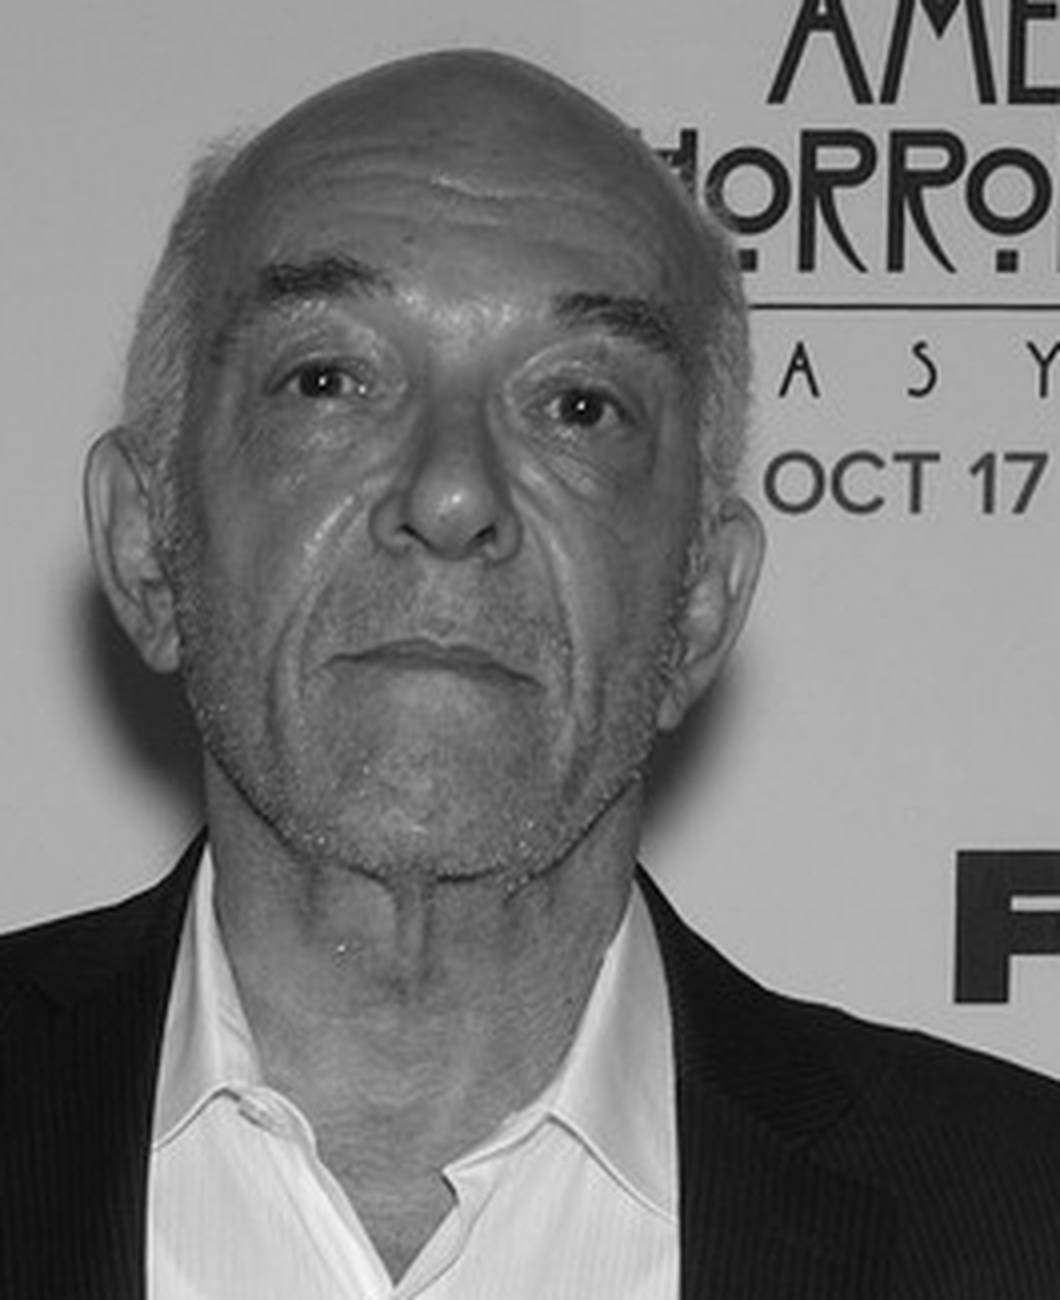 Glumac iz serije 'Breaking Bad' i filma 'Scarface' preminuo je u 84. godni: 'Bio je jedinstven'